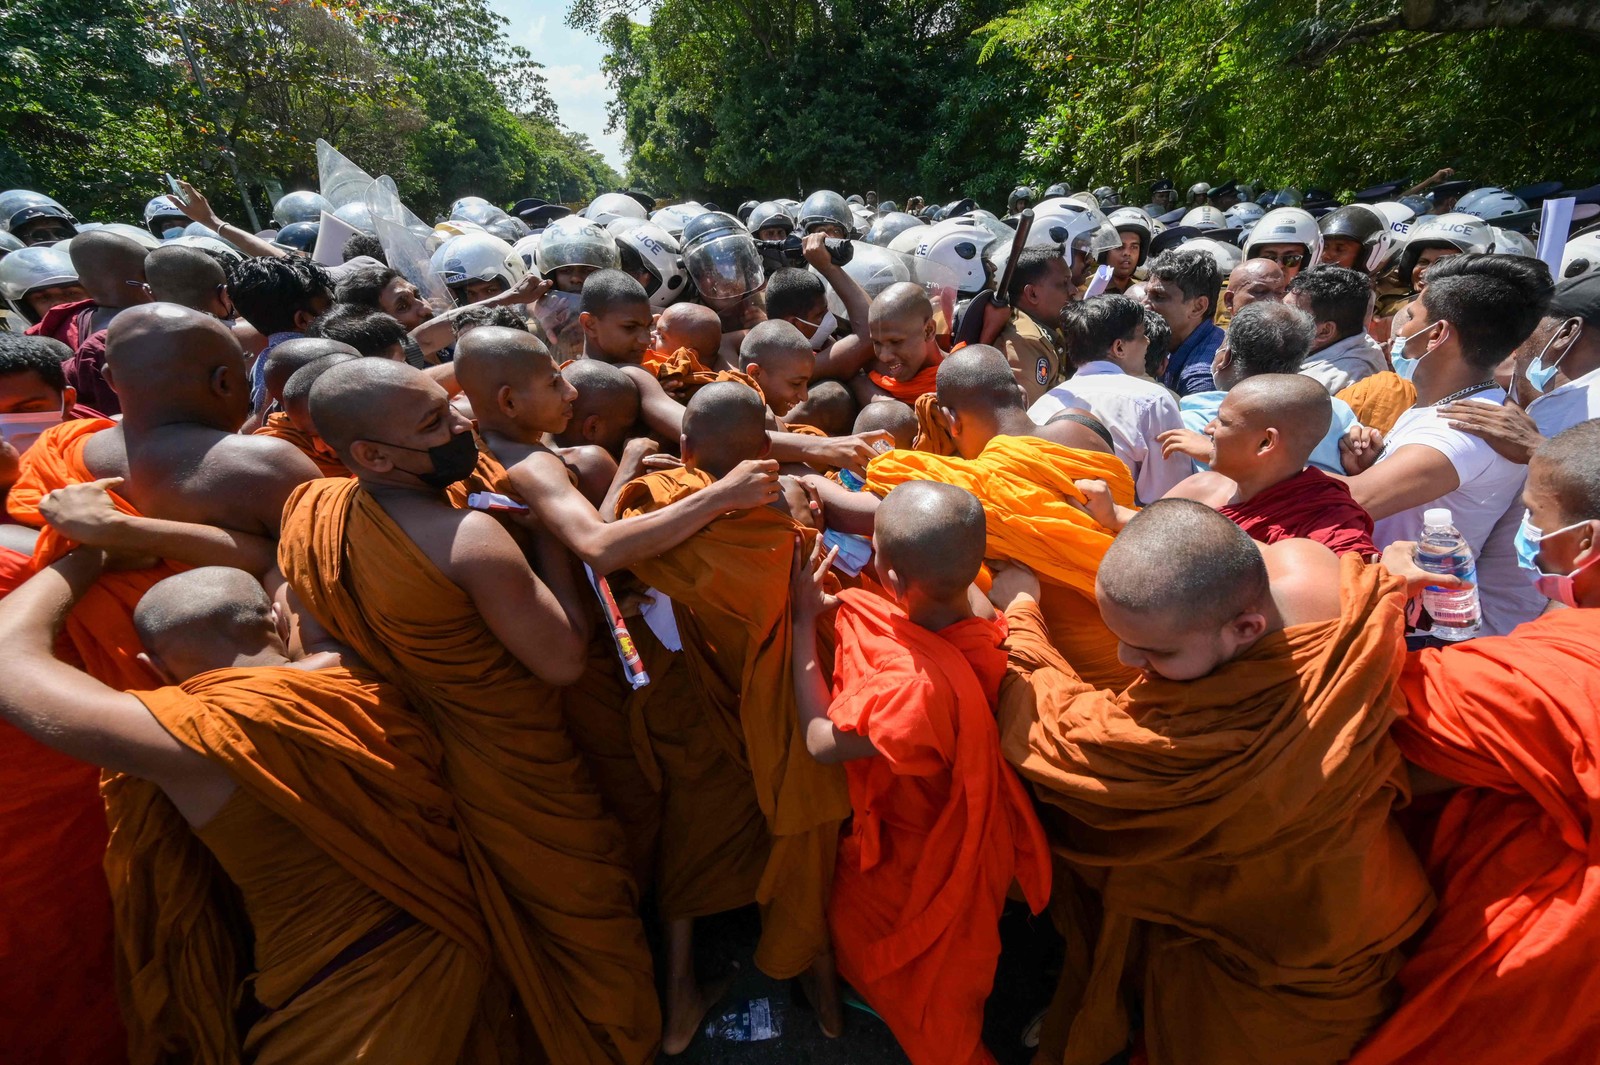 Monges budistas e outros manifestantes brigam com a polícia perto do parlamento em Colombo, no Sri Lanka — Foto: ISHARA S. KODIKARA/AFP